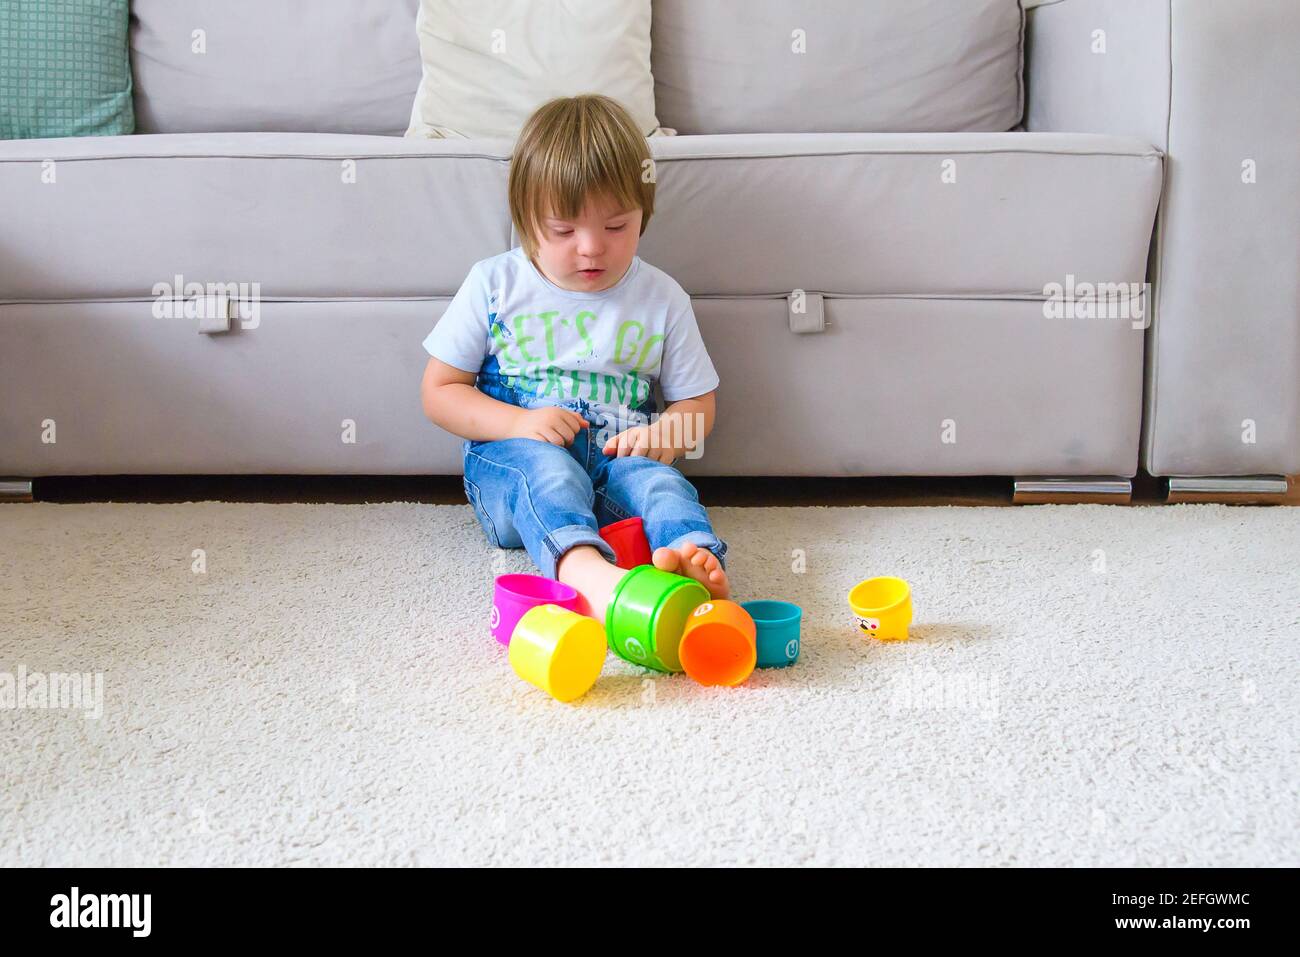 enfant solitaire avec le syndrome de down jouant dans la salle de séjour avec ses jouets pendant la quarantaine de covid Banque D'Images